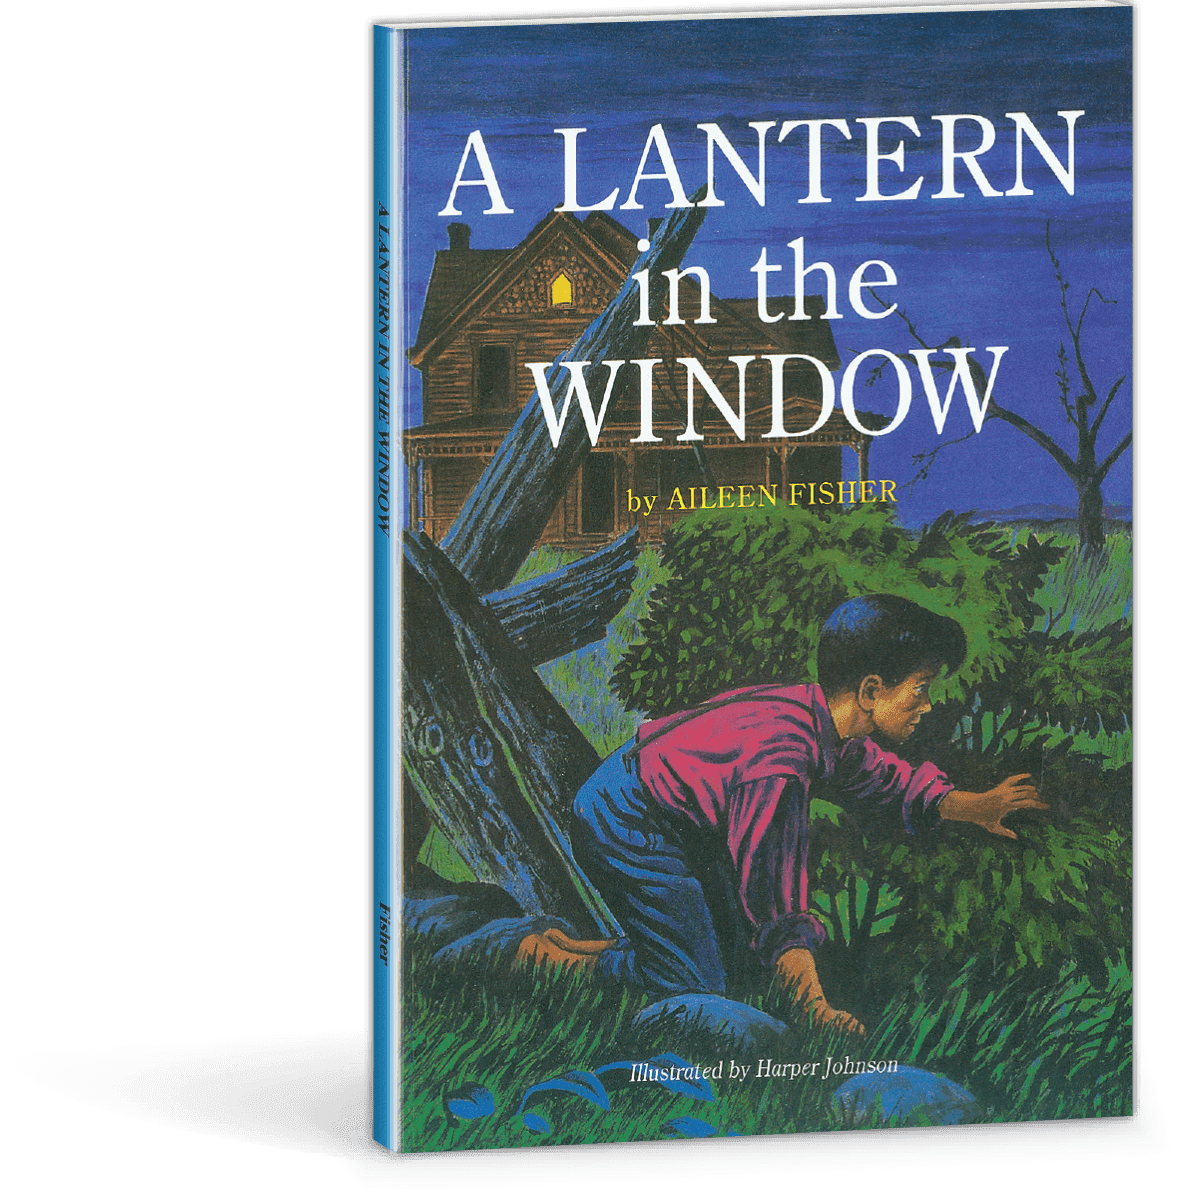 A Lantern in the Window